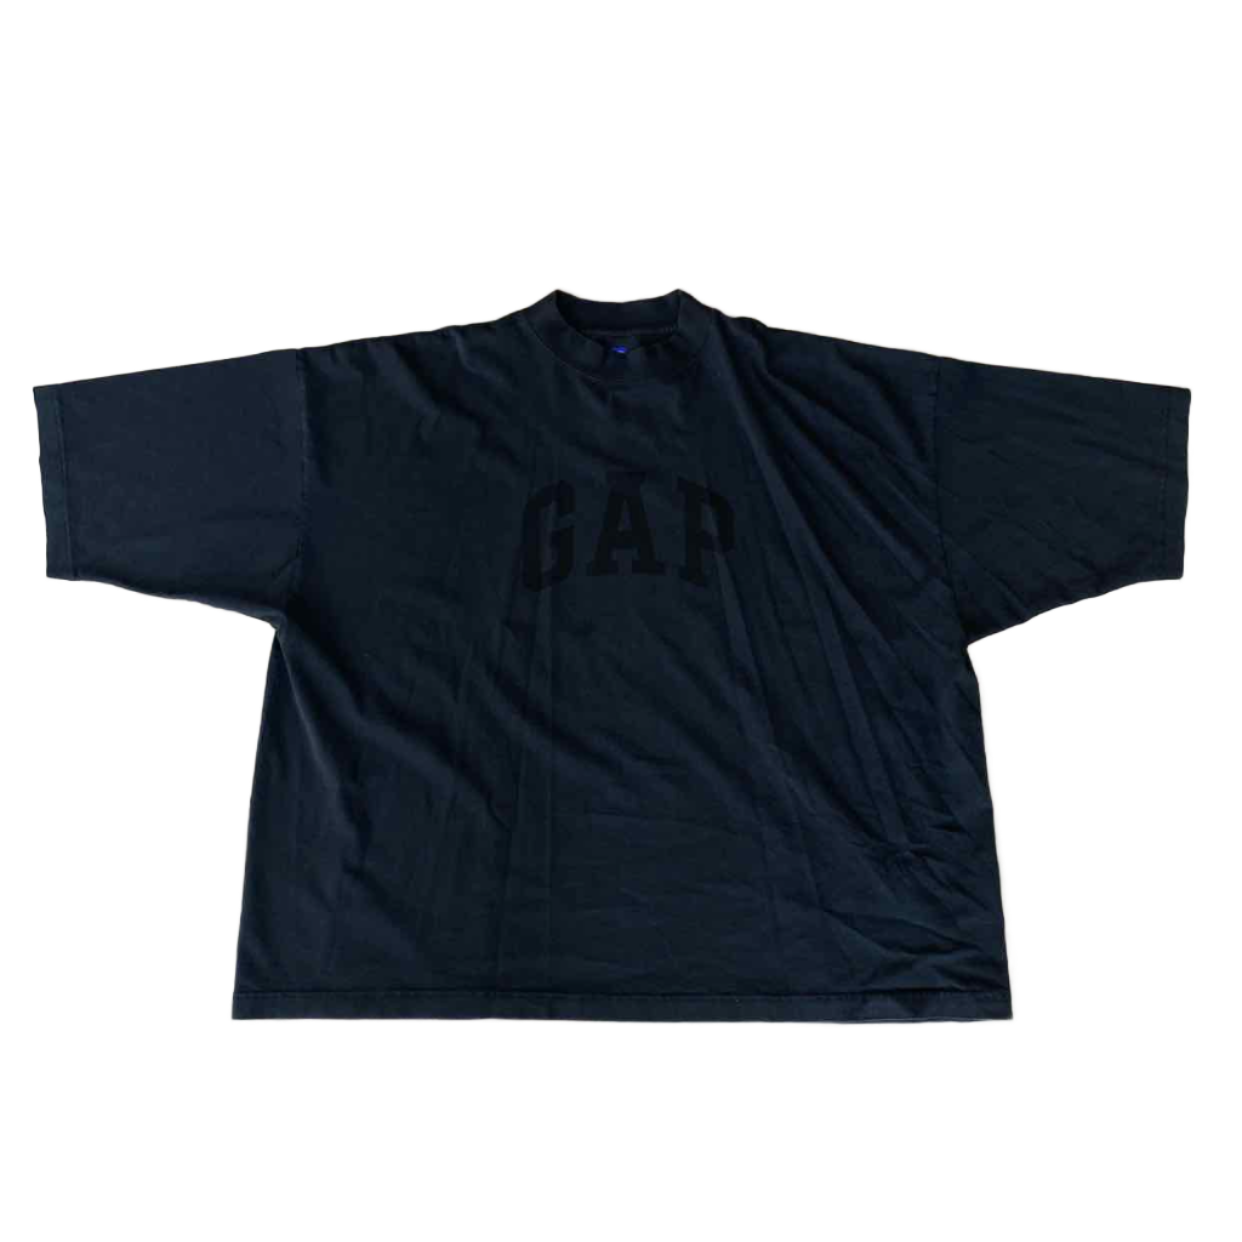 Yeezy T-Shirt &quot;GAP DOVES&quot; Black New Size XL